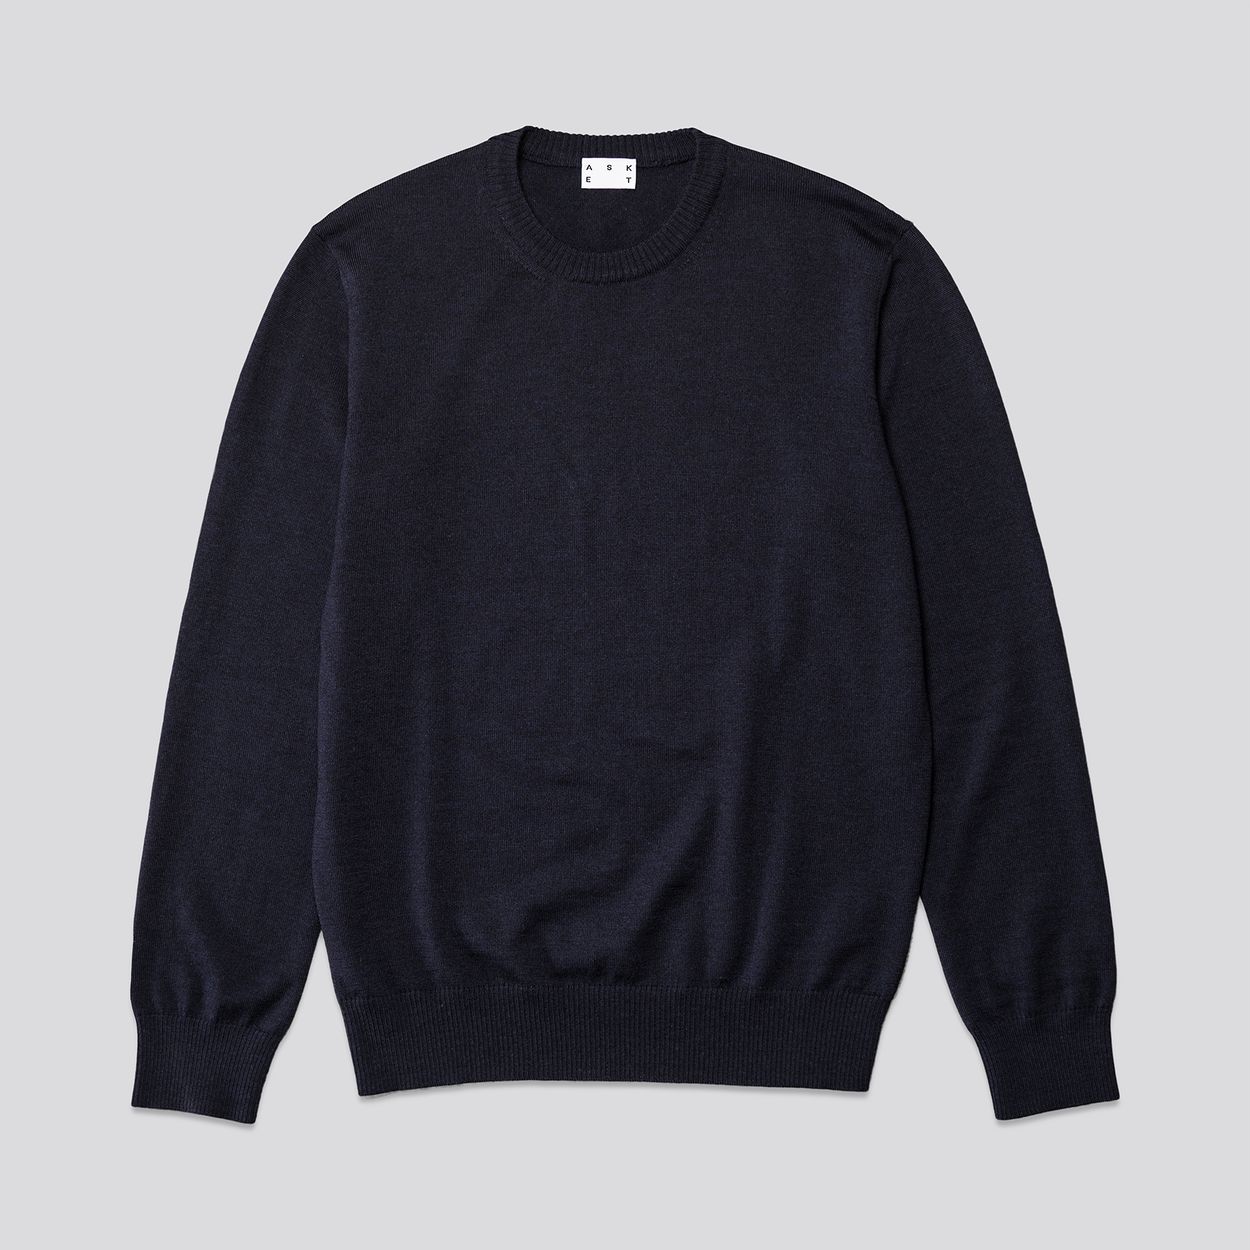 The Merino Sweater